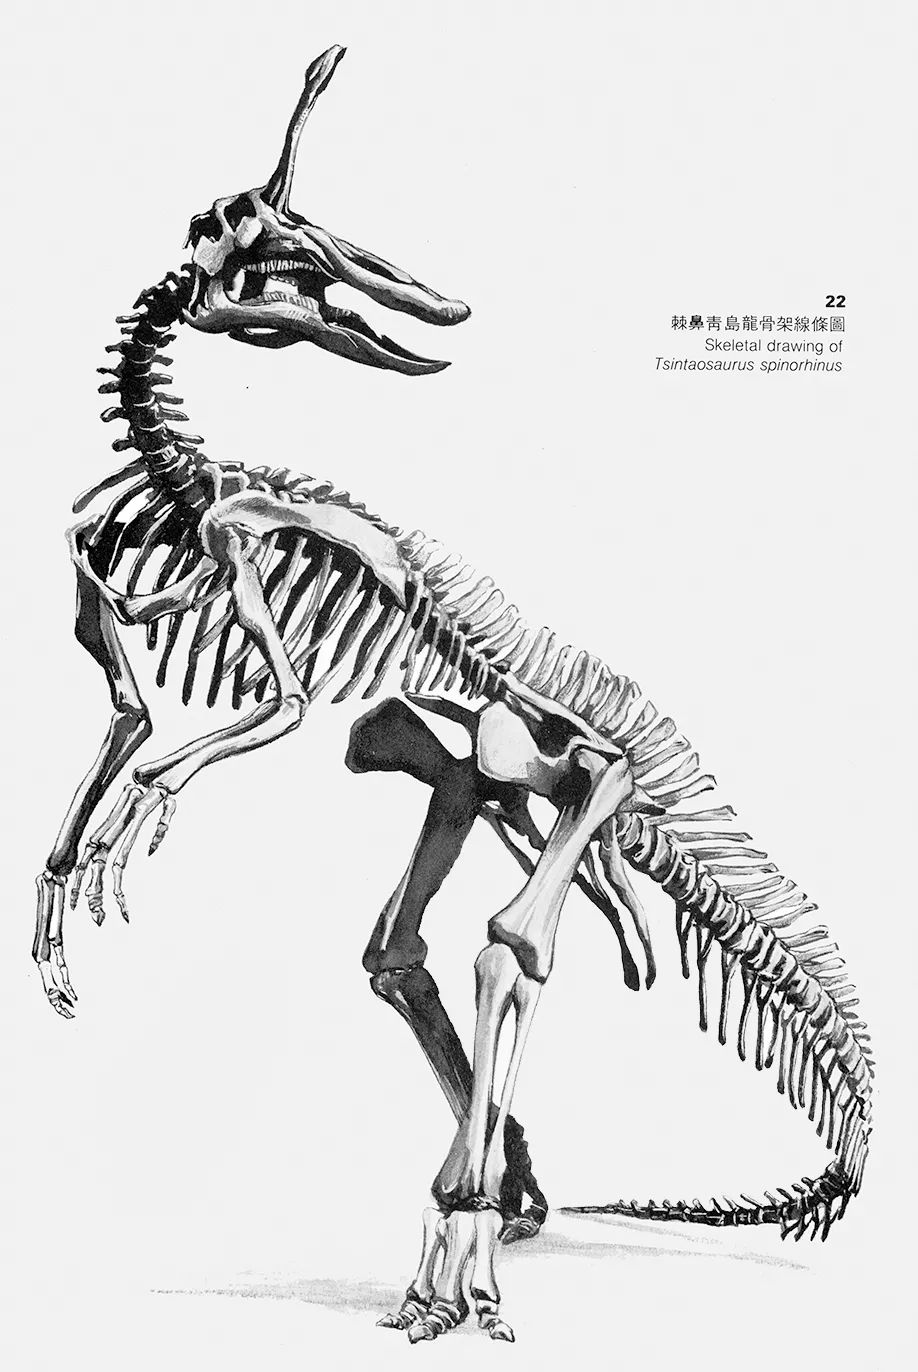 大美博物馆丨世界级标本的馆藏地:中国古动物博物馆